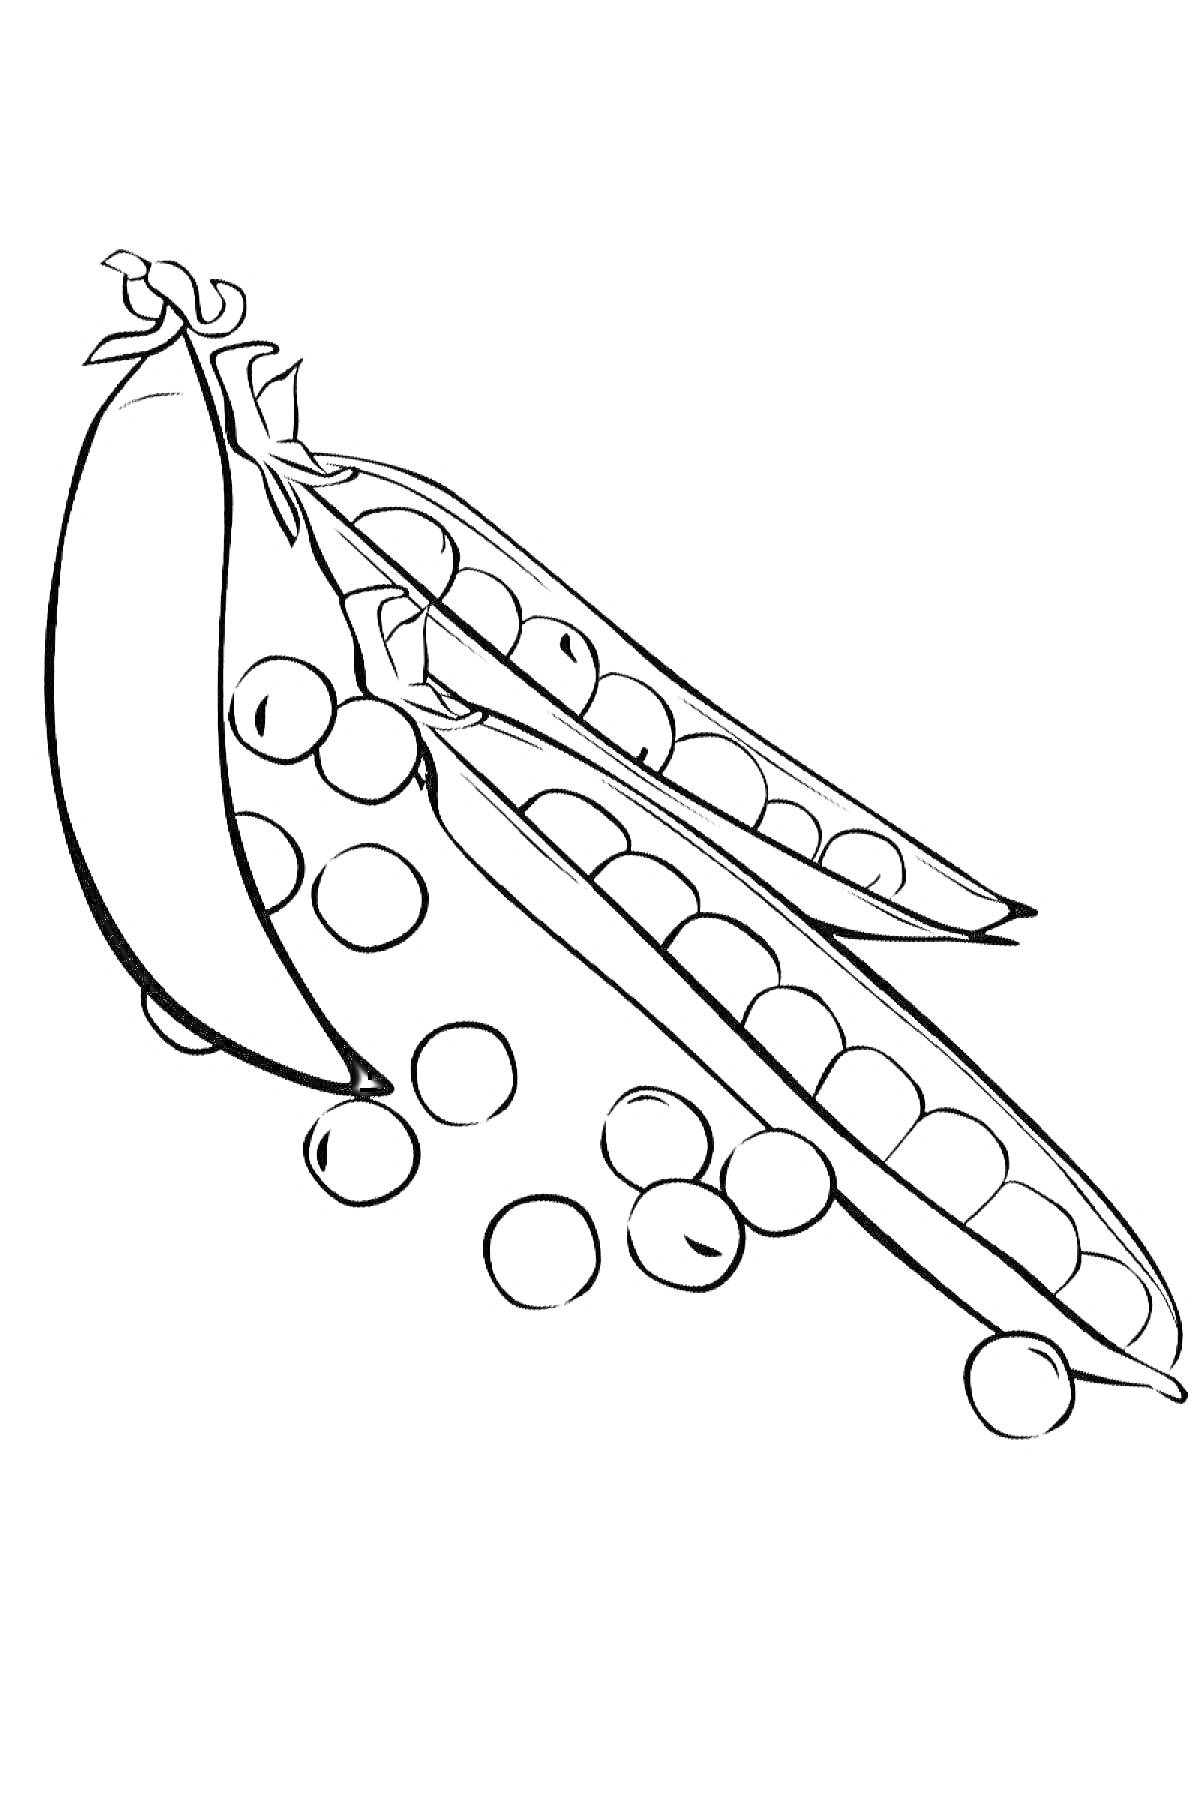 Раскраска Ракушка стручкового гороха с открытыми стручками и горошинами.